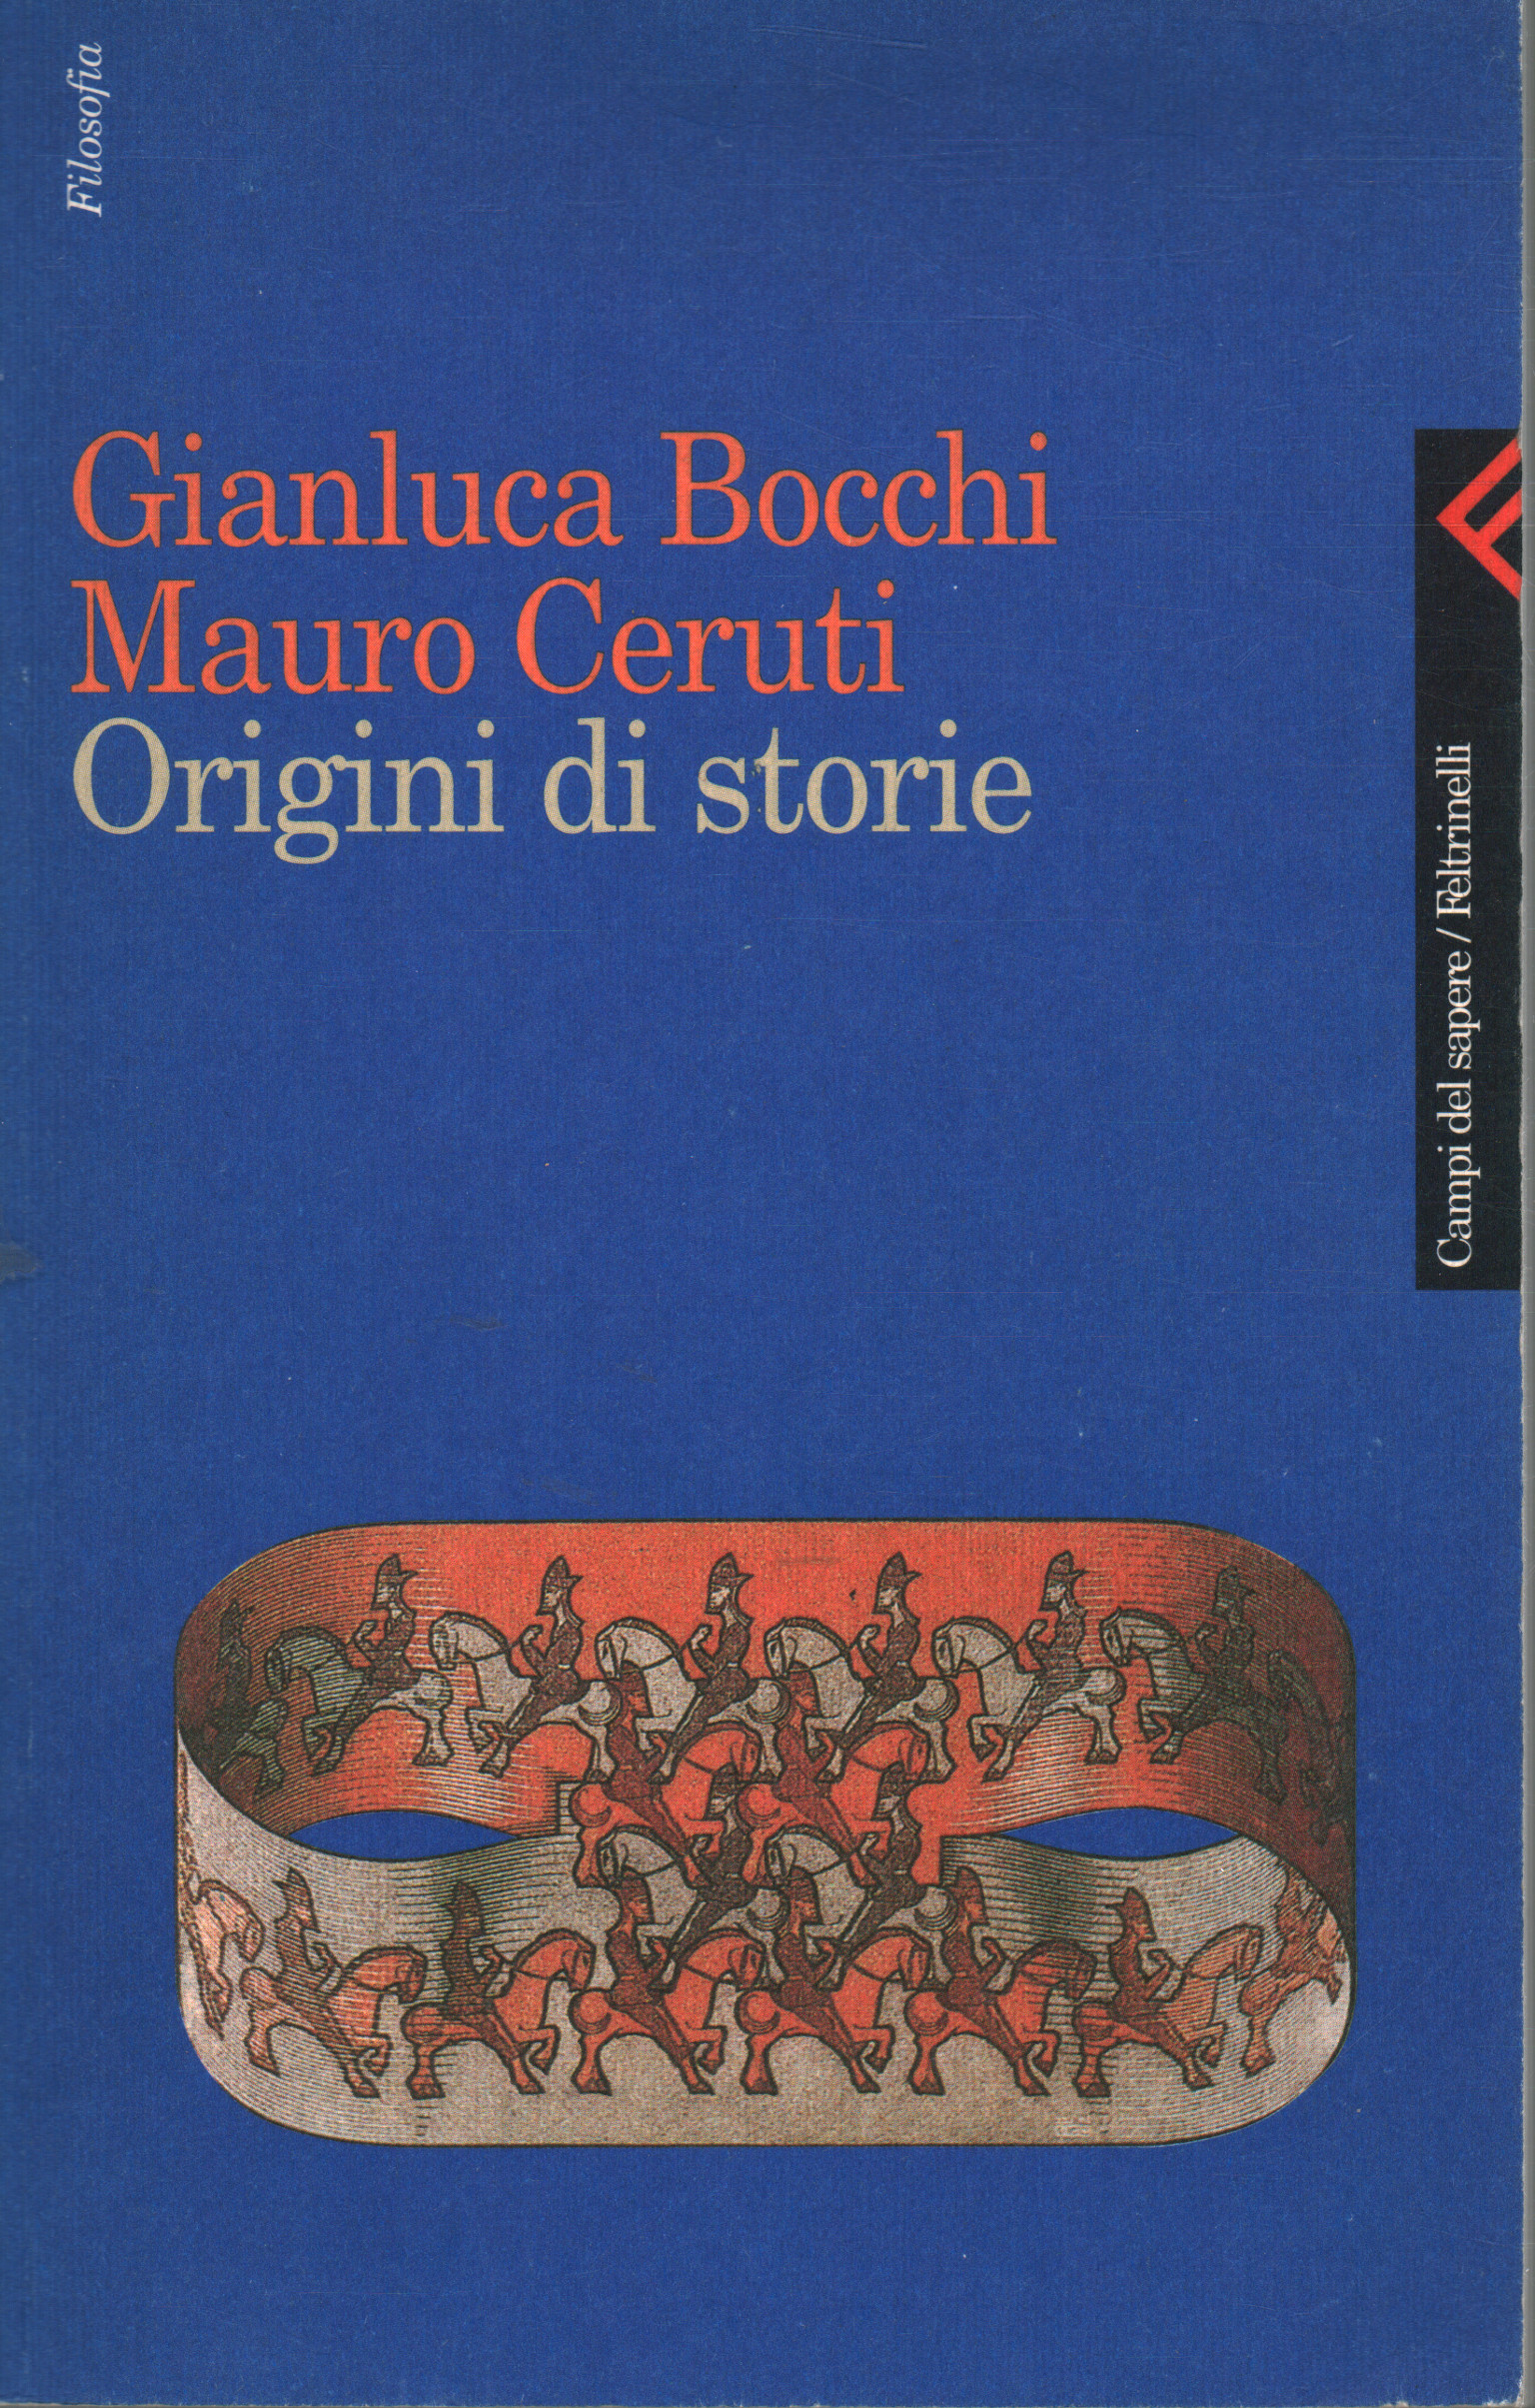 Los orígenes de las historias, Gianluca Bocchi y Mauro Ceruti